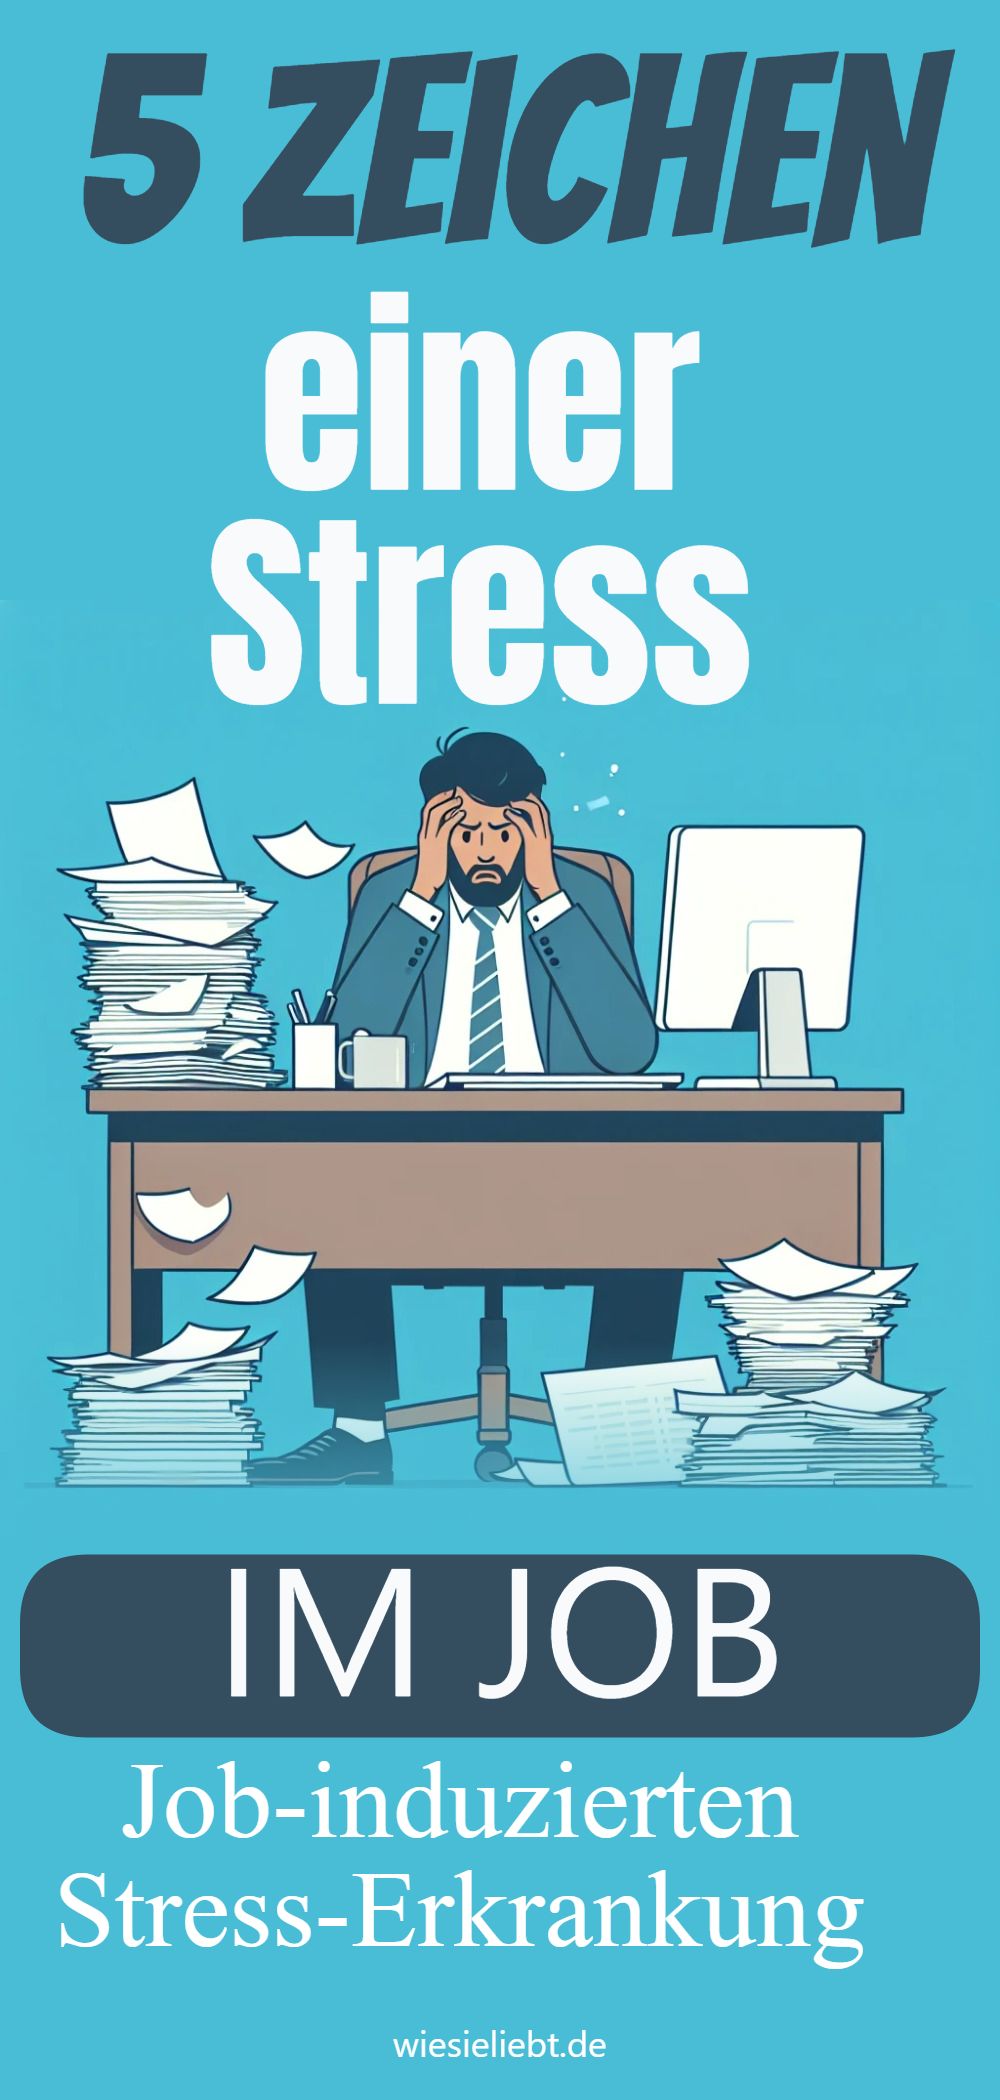 5 Zeichen einer Stress IM JOB Job-induzierten Stress-Erkrankung